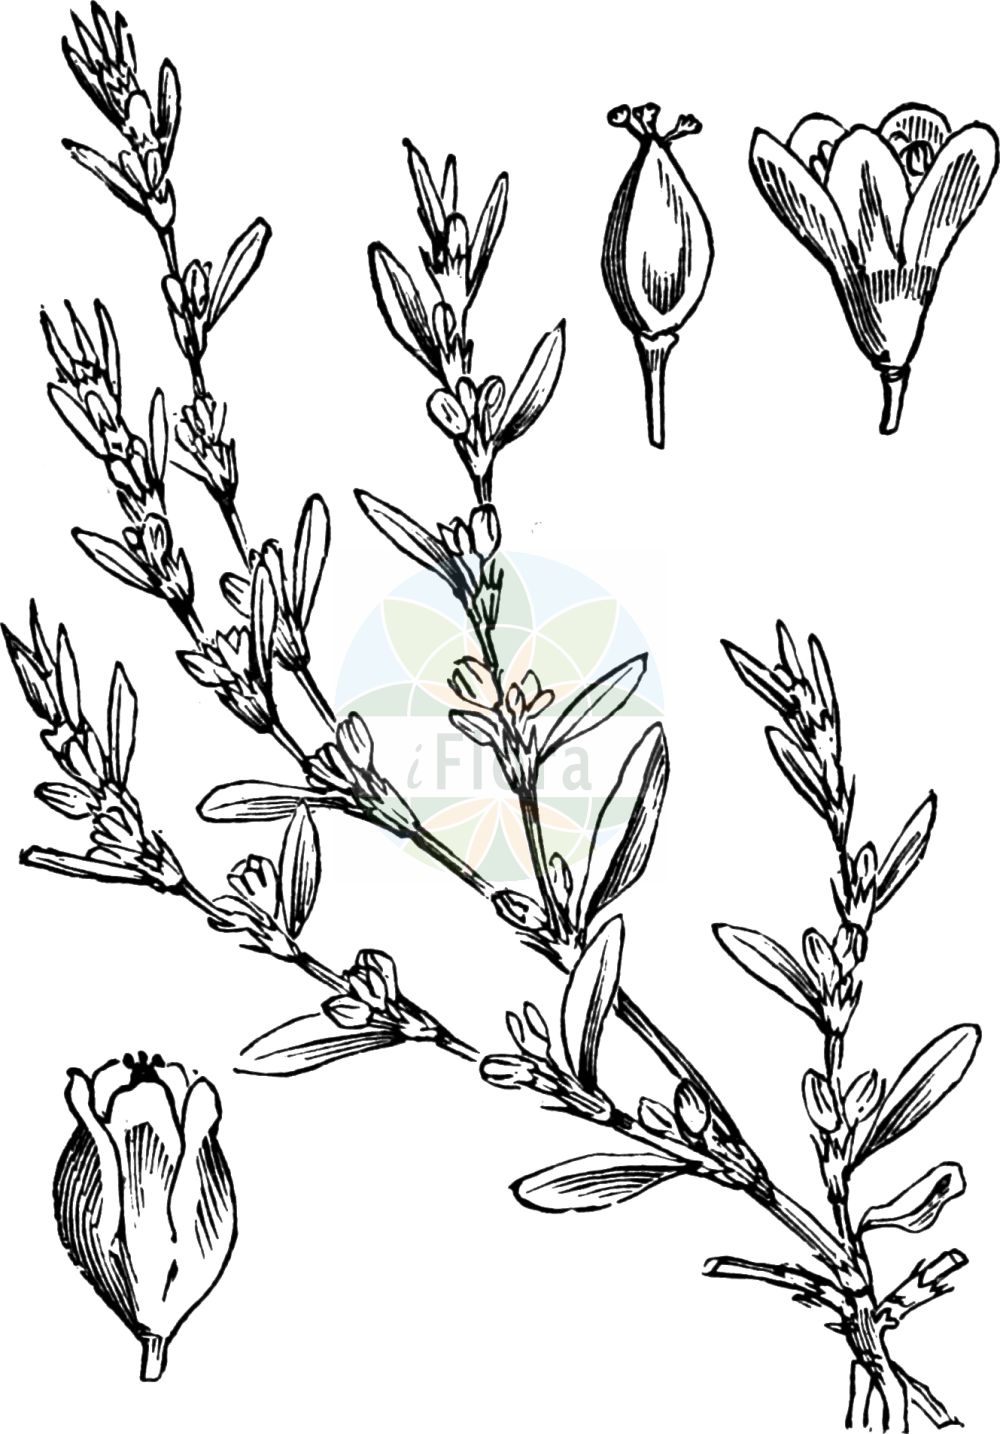 Historische Abbildung von Polygonum aviculare (Echter Vogelknöterich - Knotgrass). Das Bild zeigt Blatt, Bluete, Frucht und Same. ---- Historical Drawing of Polygonum aviculare (Echter Vogelknöterich - Knotgrass). The image is showing leaf, flower, fruit and seed.(Polygonum aviculare,Echter Vogelknöterich,Knotgrass,Polygonum aviculare,Polygonum dissitiflorum,Polygonum erectum,Polygonum gracile,Polygonum heterophyllum,Polygonum litorale,Echter Vogelknoeterich,Vogel-Knoeterich,Knotgrass,Common Knotweed,Polygonum,Knöterich,Knotgrass,Polygonaceae,Knöterichgewächse,Knotgrass family,Blatt,Bluete,Frucht,Same,leaf,flower,fruit,seed,Fitch et al. (1880))